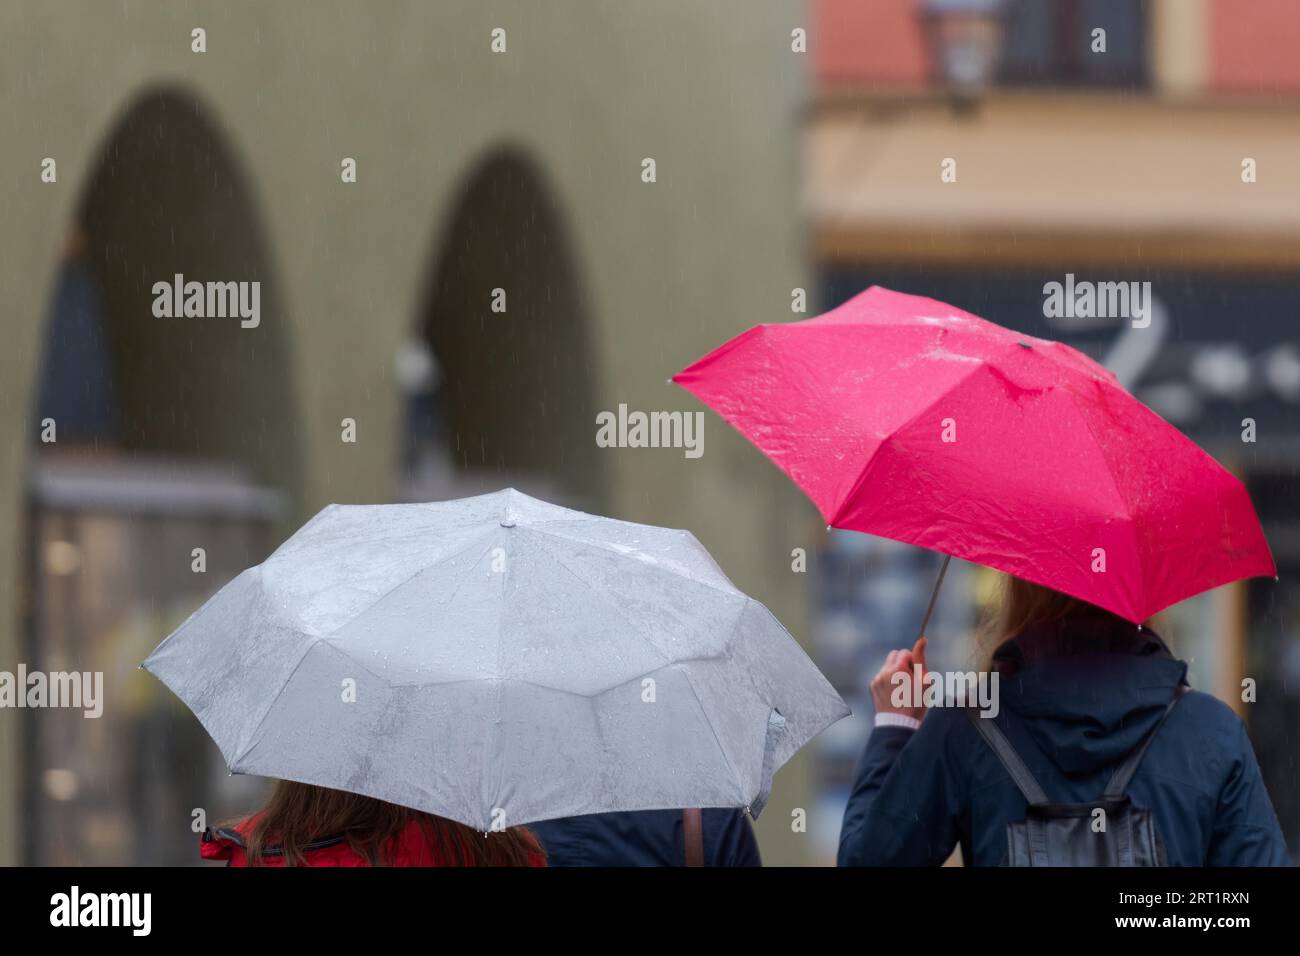 Oberkörper von zwei nicht erkennbaren Menschen mit Regenschirmen, die durch die Straße in alten engen Schuppungsstraße an regnerischen Tag gehen Stockfoto